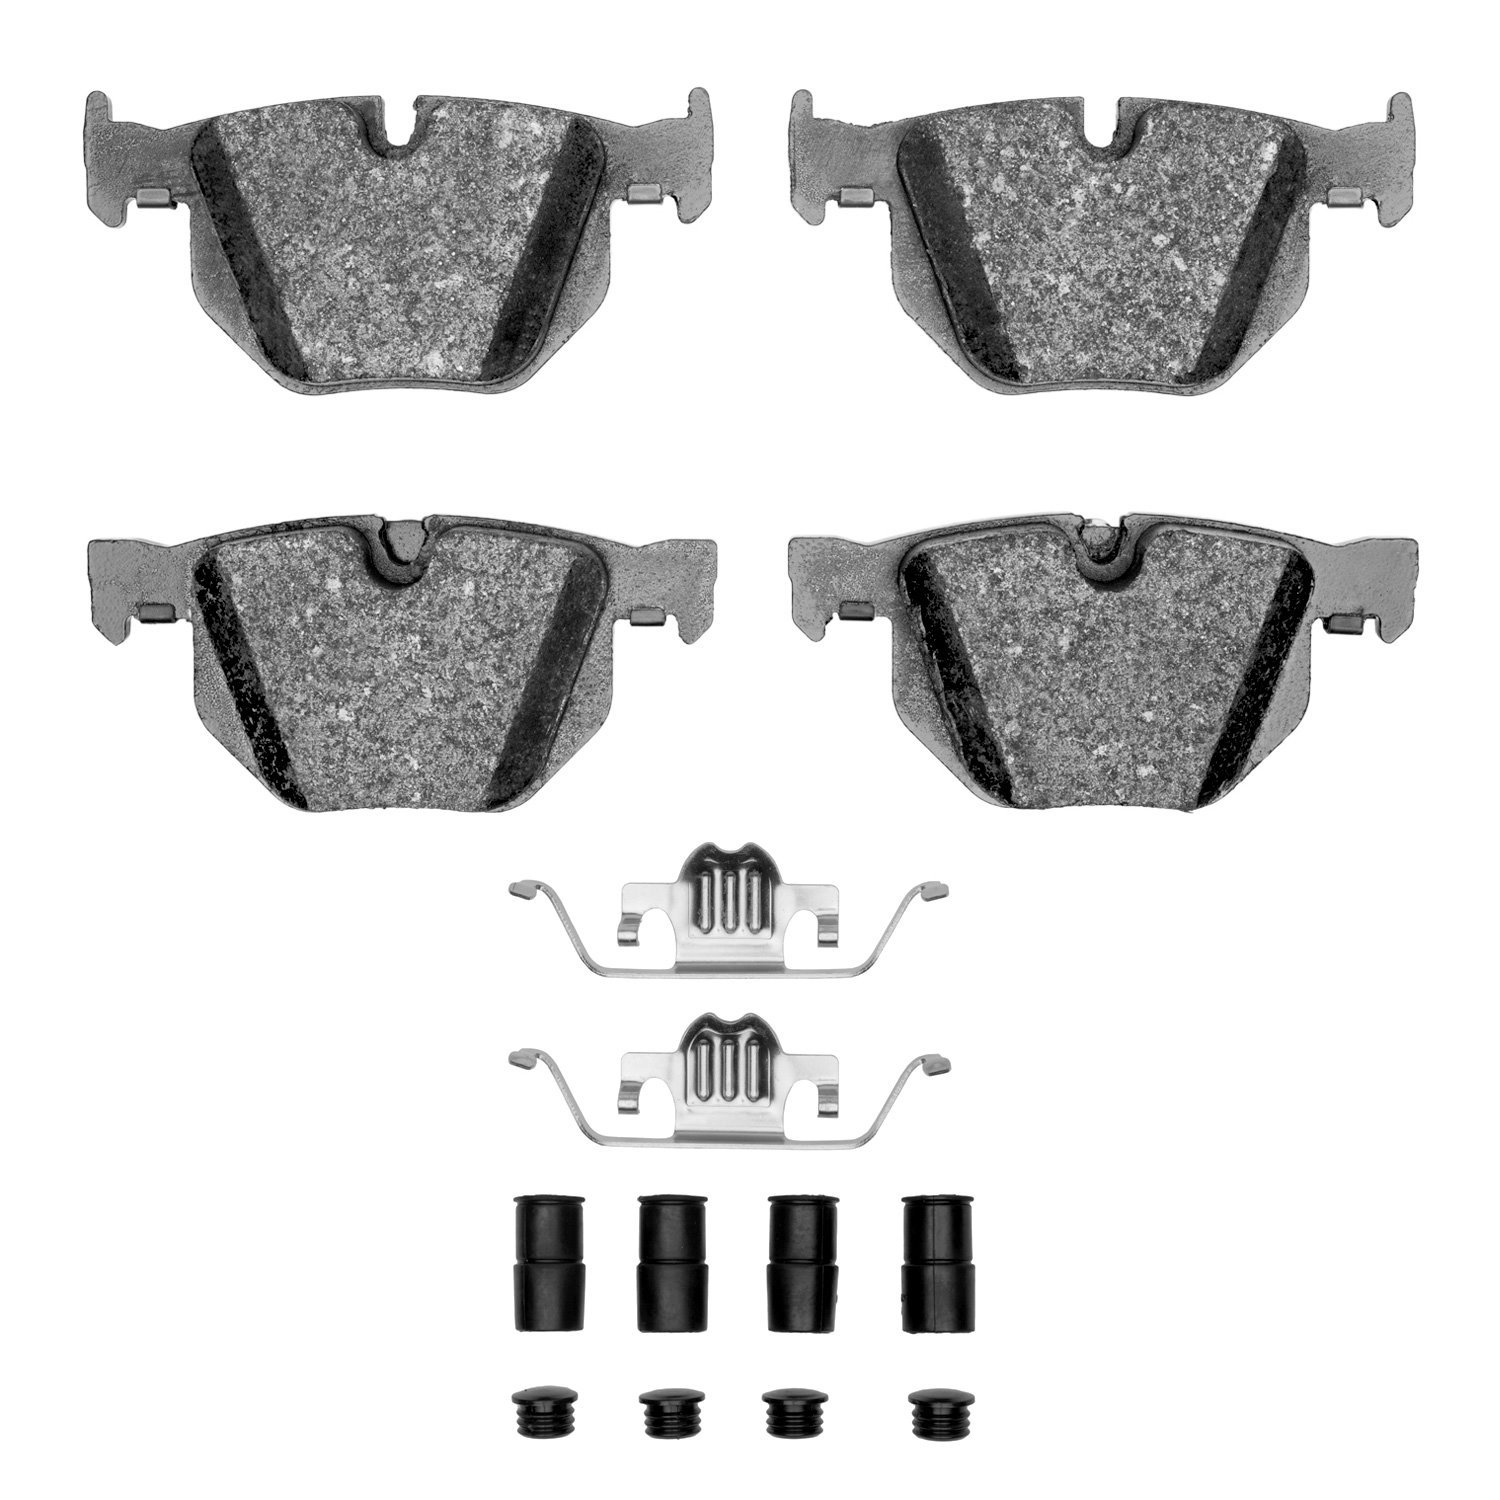 1311-0683-12 3000-Series Semi-Metallic Brake Pads & Hardware Kit, 2004-2010 BMW, Position: Rear